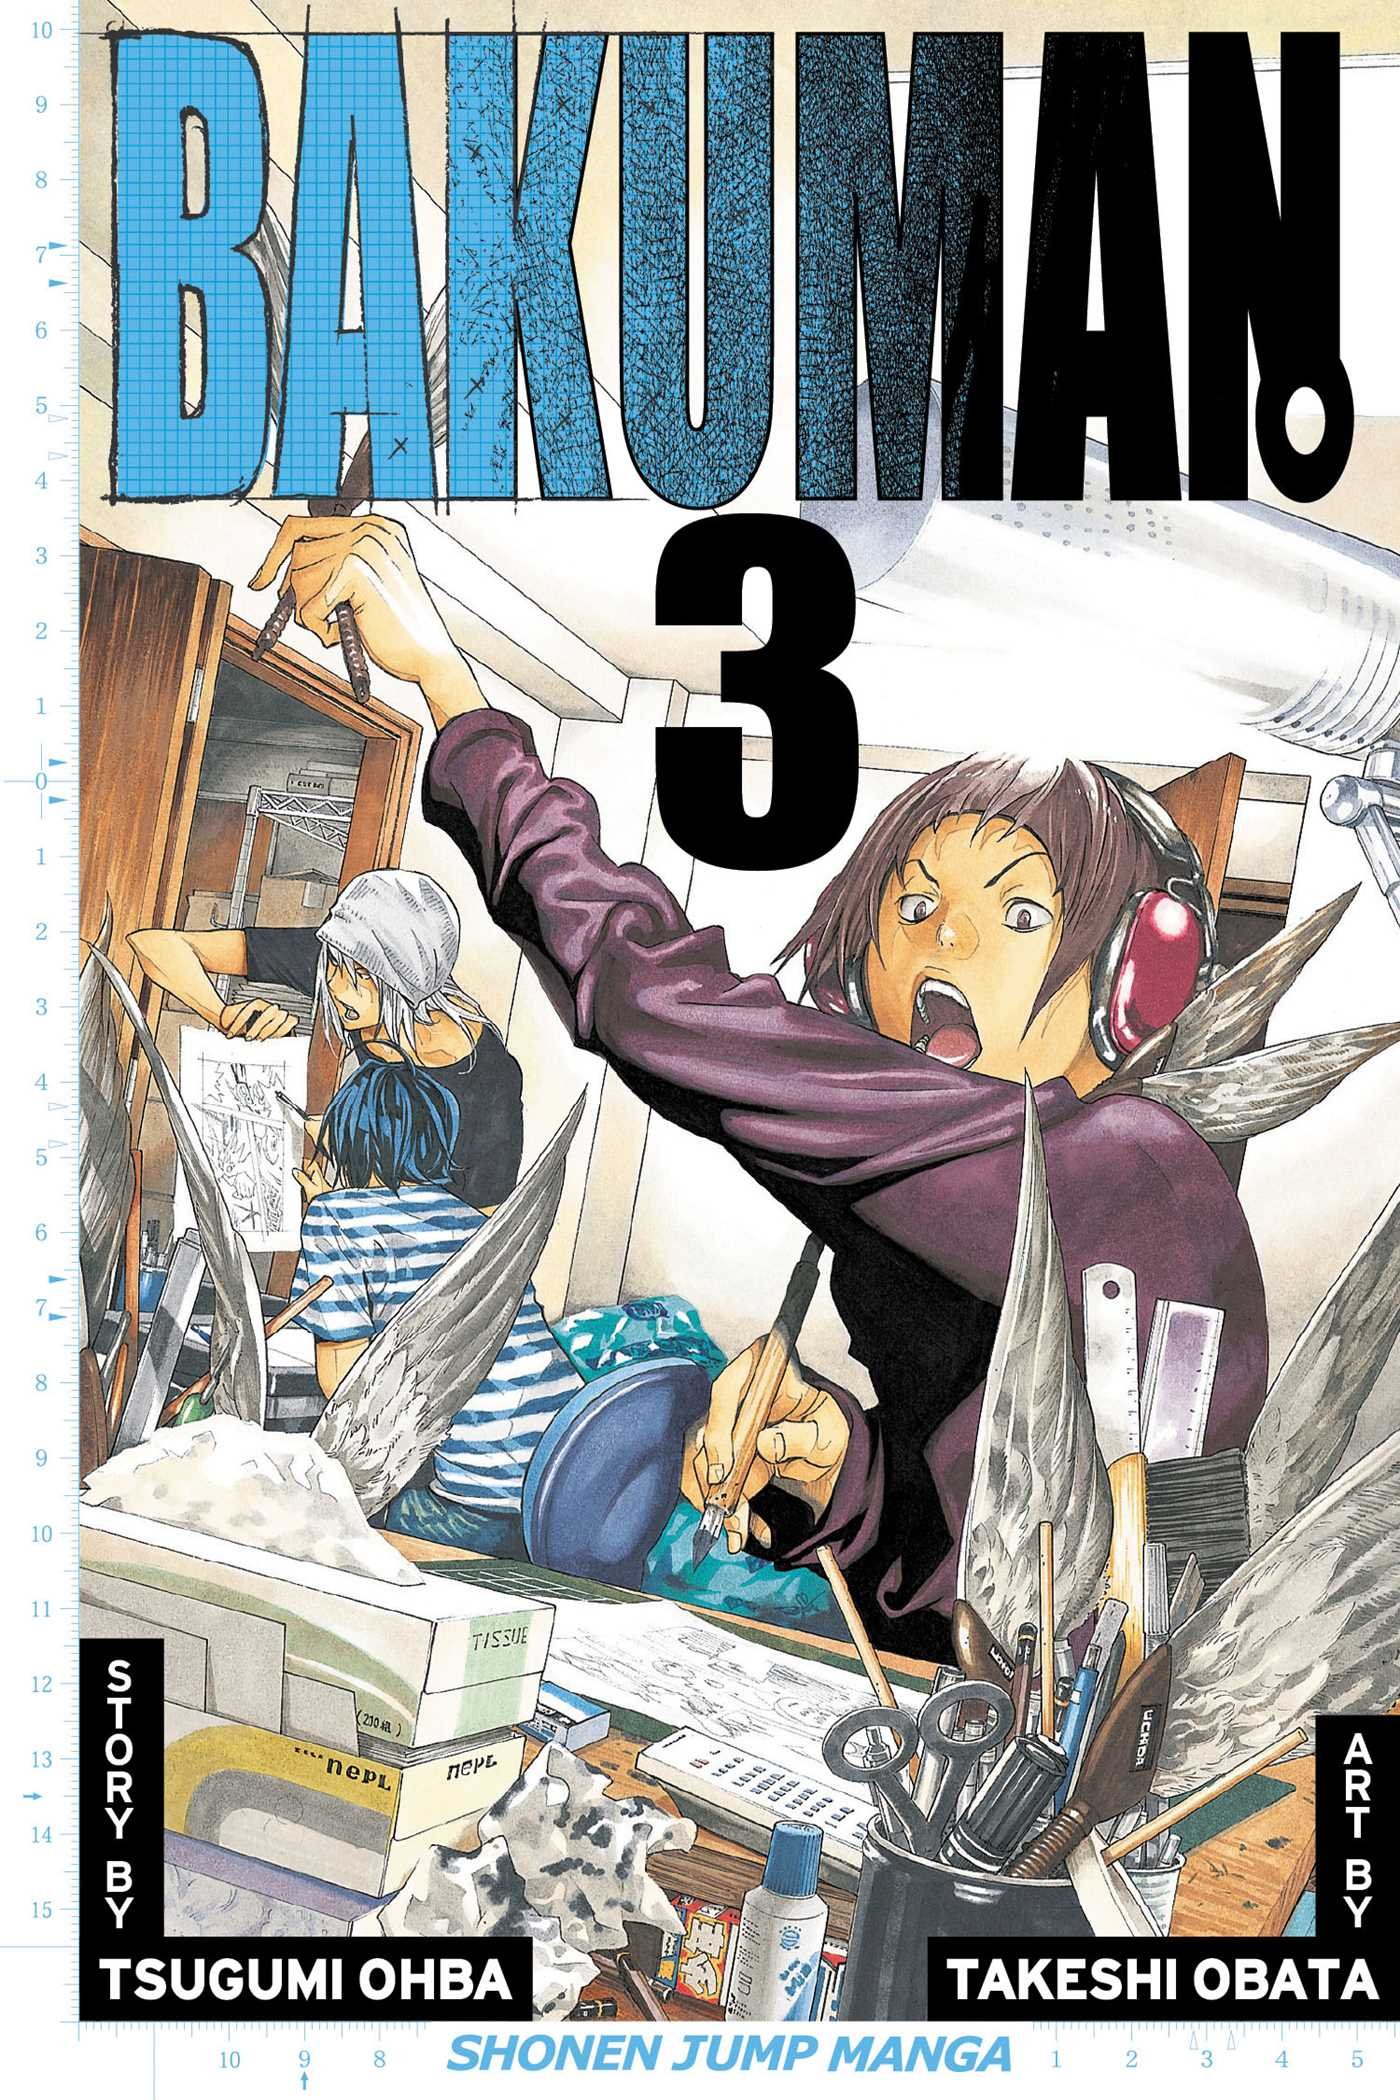 Bakuman 3 บาคุมัง วัยซนคนการ์ตูน ภาค 3 ตอนที่ 1-25 จบ ซับไทย